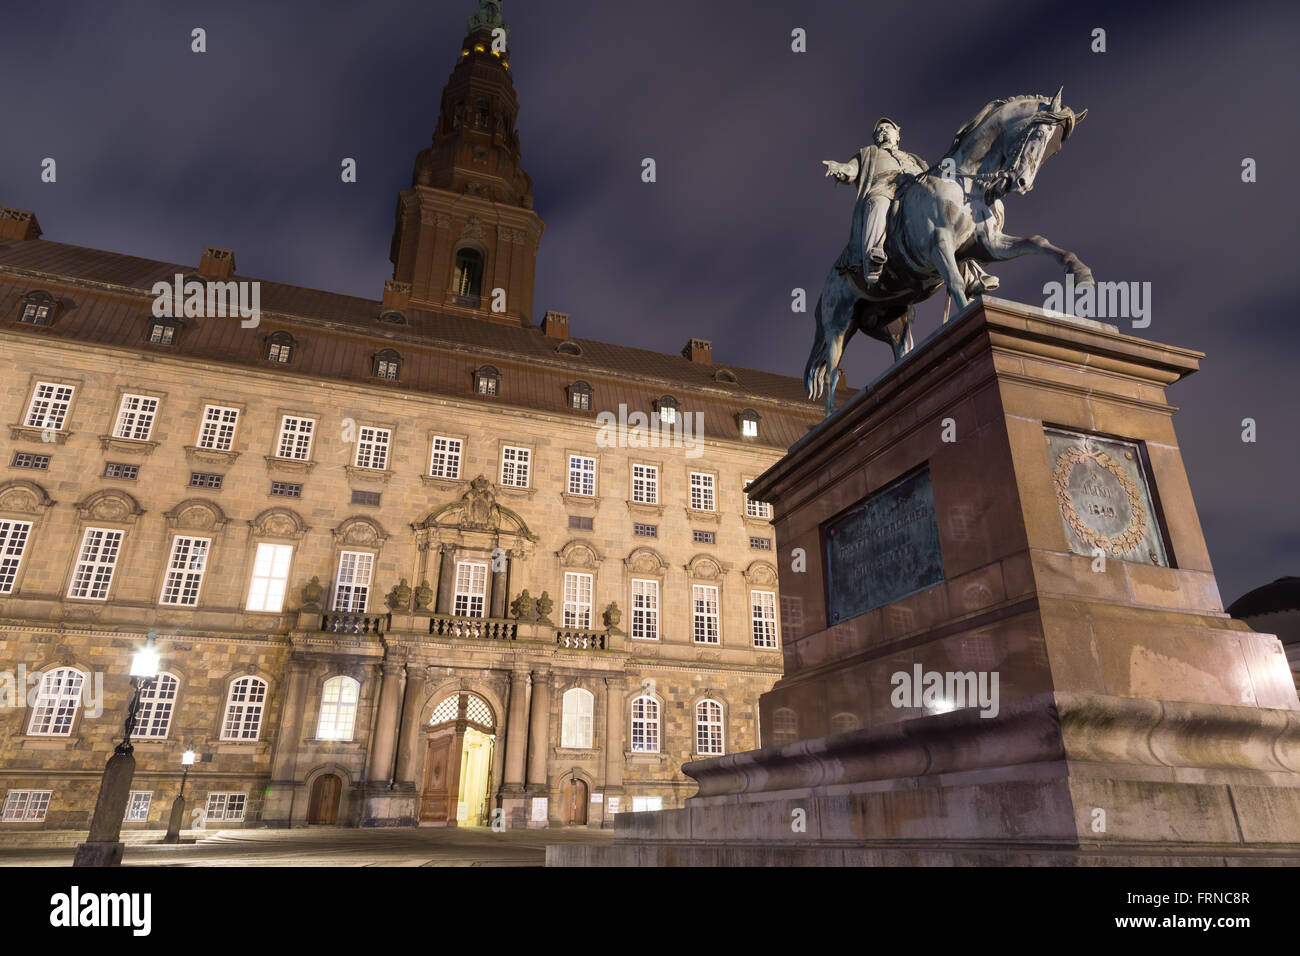 Copenhague, Danemark - Mars 22, 2016 : Le siège du parlement danois Christiansborg Palace par nuit. Banque D'Images